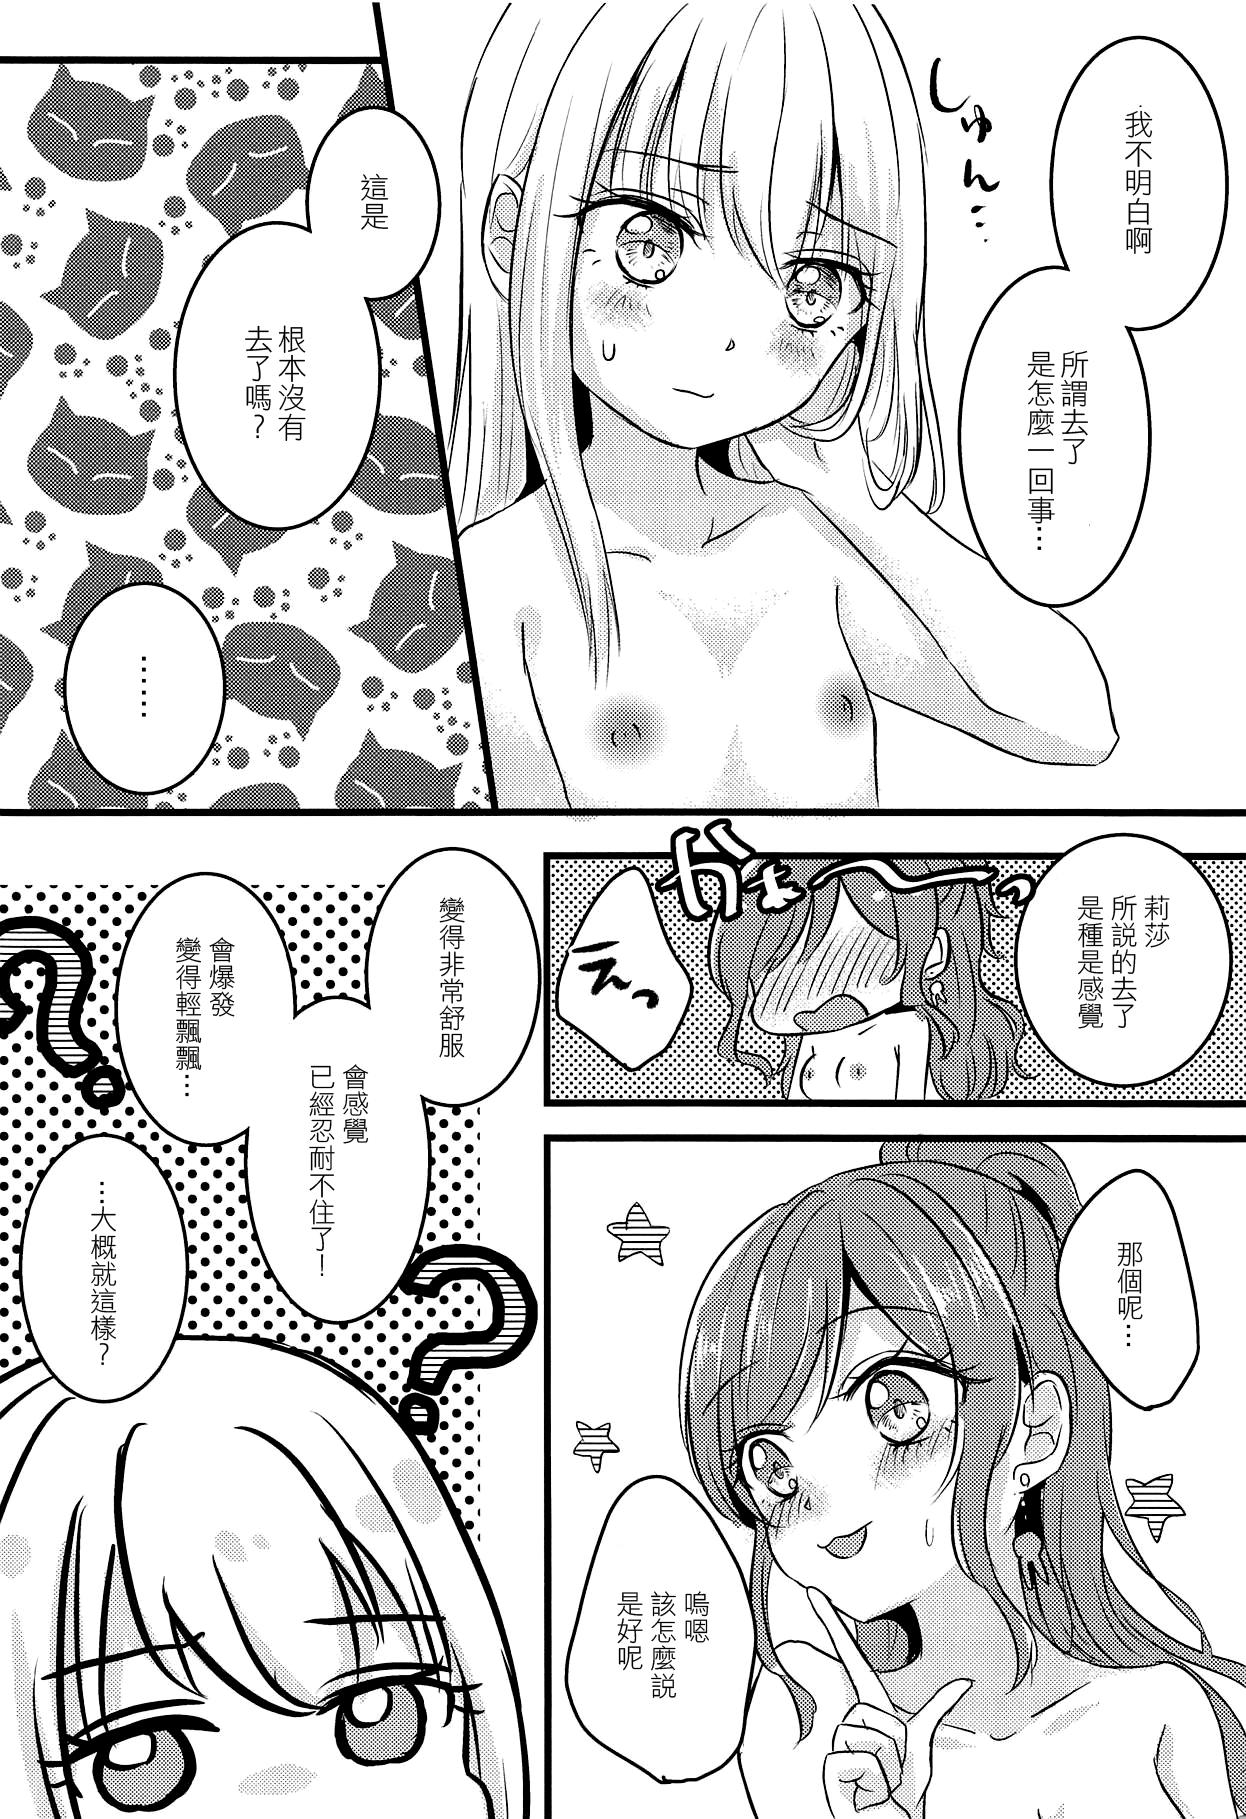 Cock Futari no Eureka | 兩個人的尤里卡 - Bang dream Naked Sex - Page 3